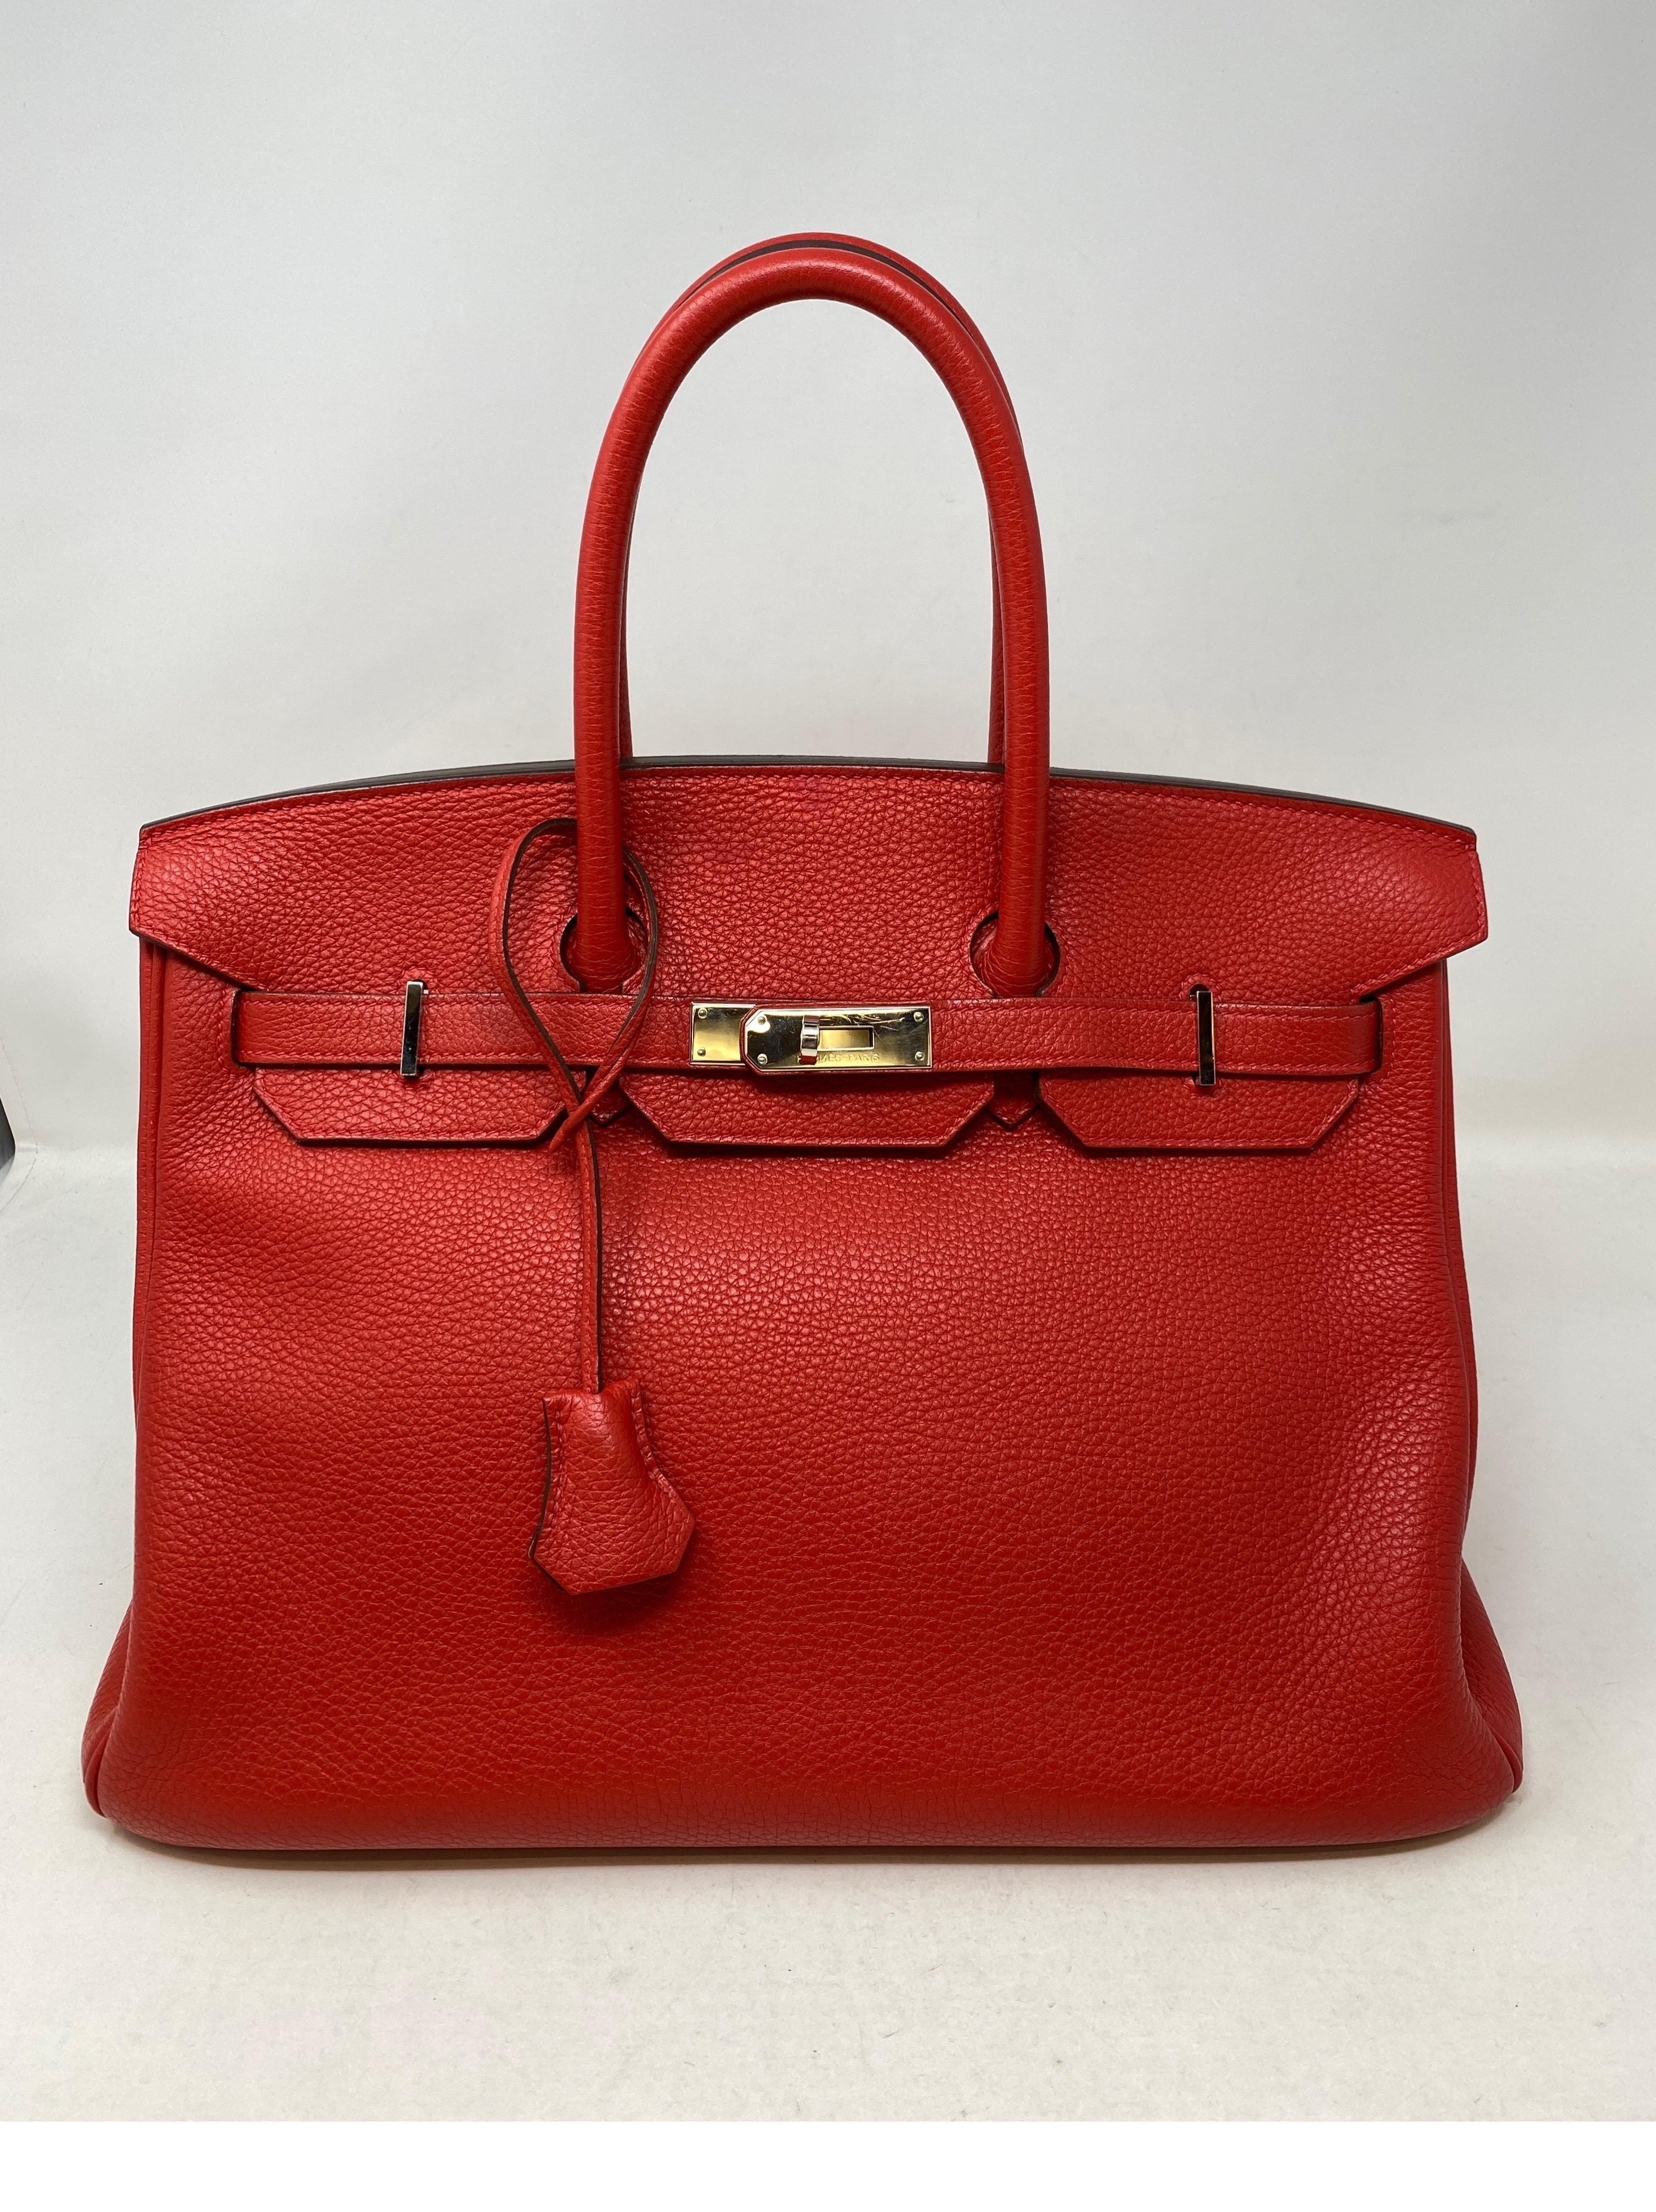 Hermès birkin Bag
Red Leather
Palladium-Plated Hardware 
Excellent condition